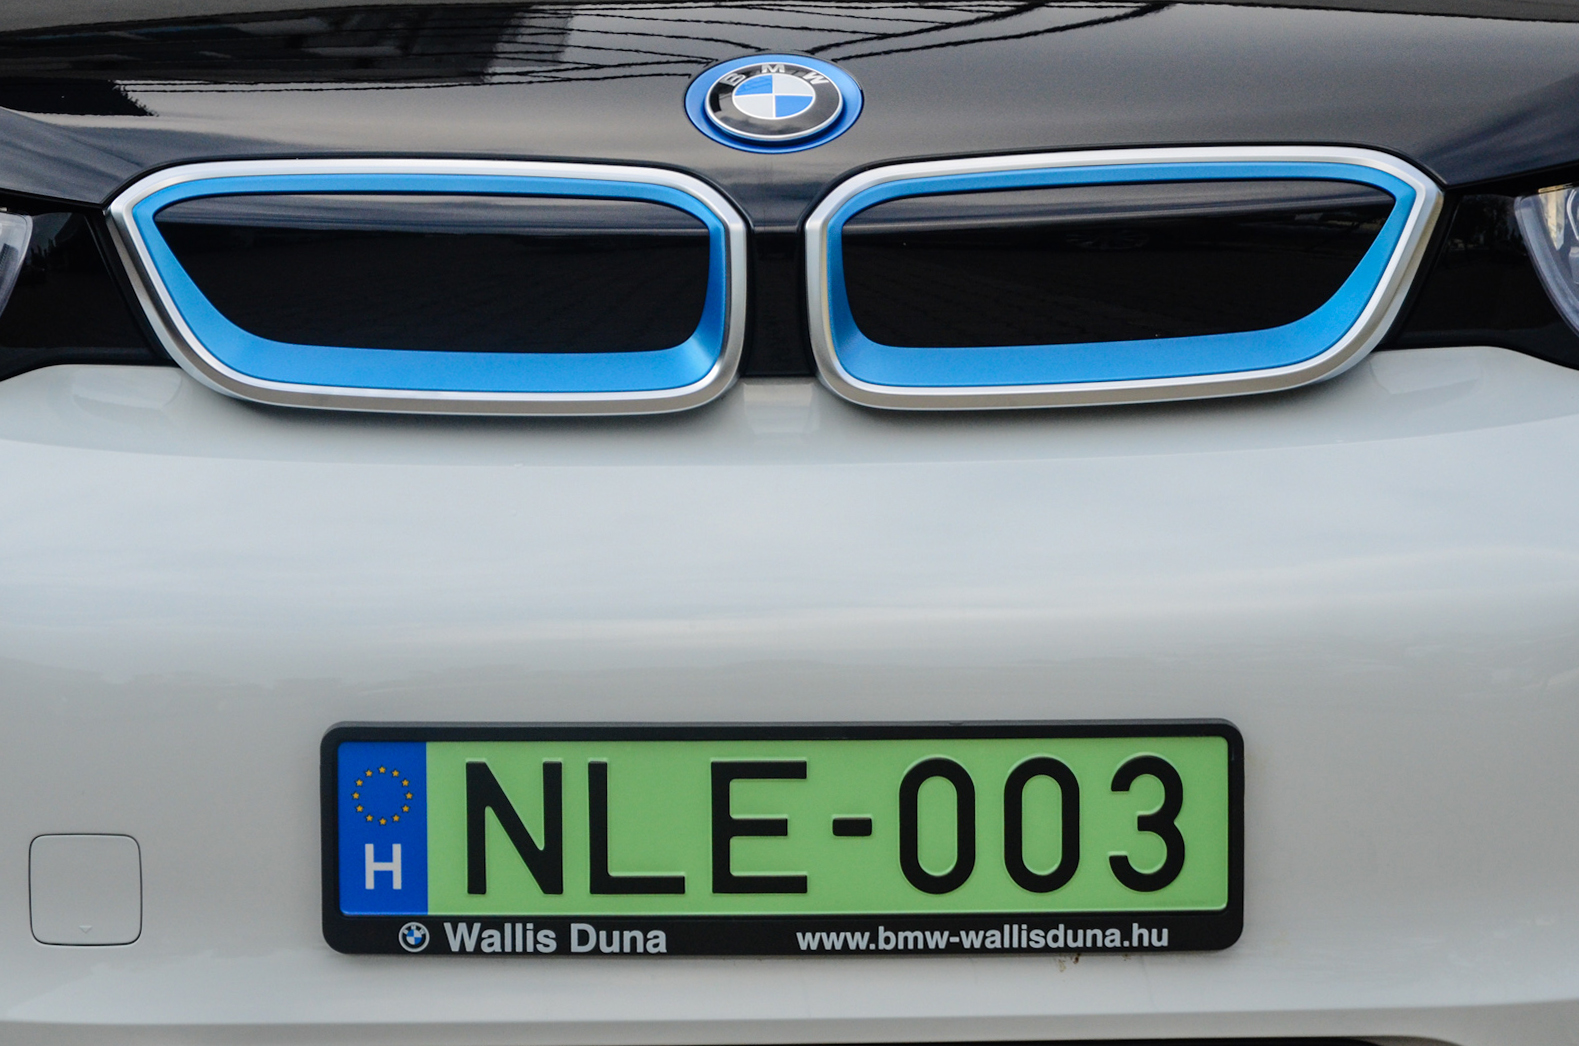 A zöld rendszámot elsőként megkapó BMW i3 elektromos meghajtású személygépkocsi Budapesten 2015 októberében